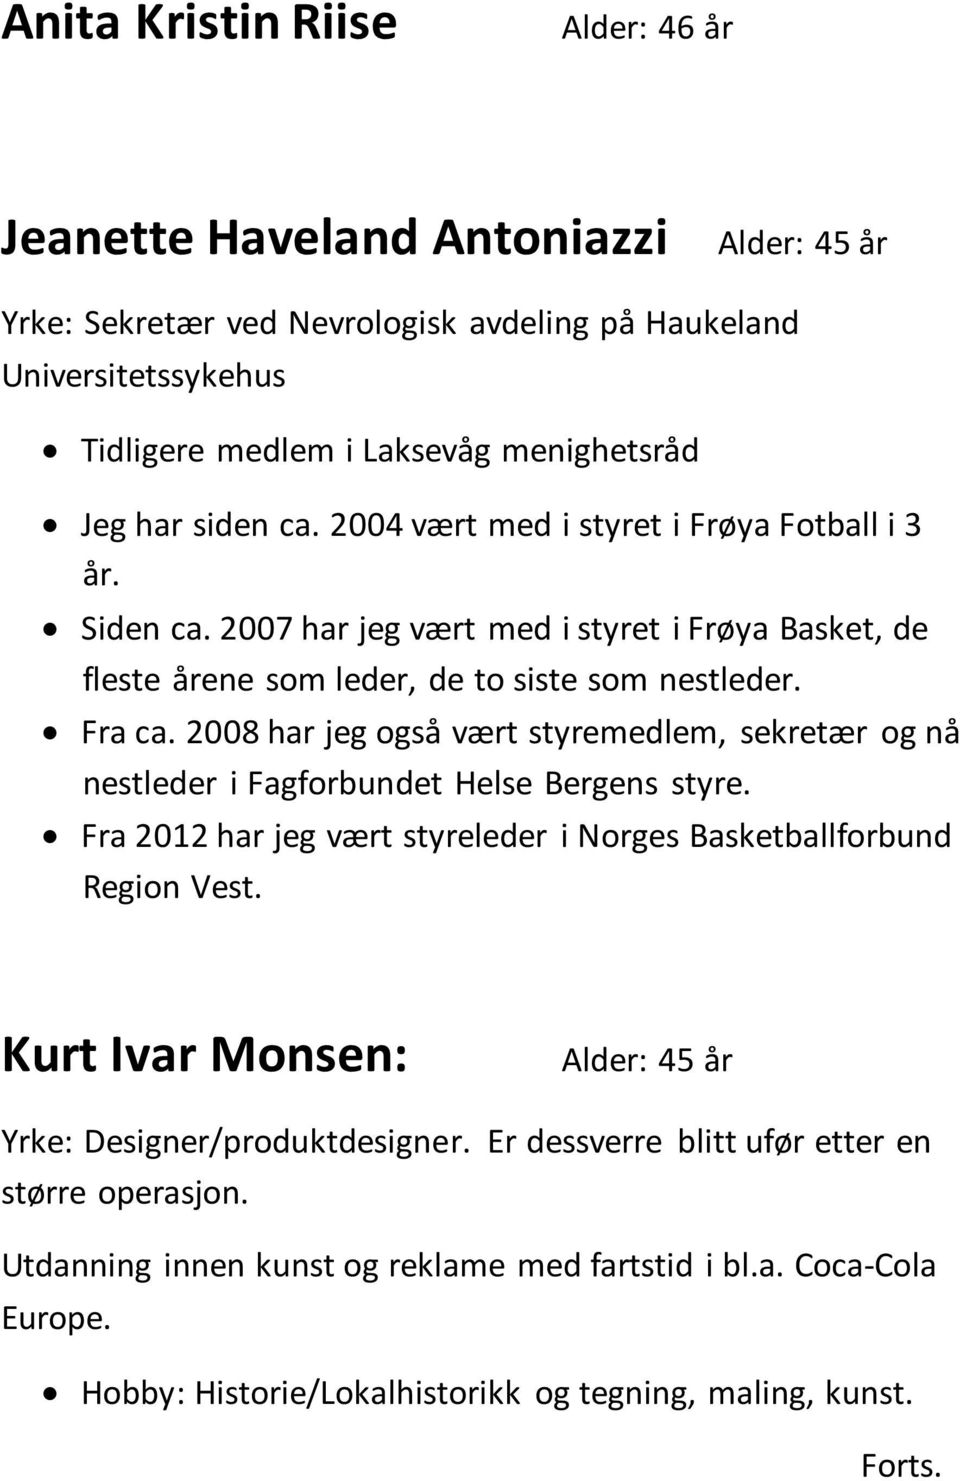 2008 har jeg også vært styremedlem, sekretær og nå nestleder i Fagforbundet Helse Bergens styre. Fra 2012 har jeg vært styreleder i Norges Basketballforbund Region Vest.